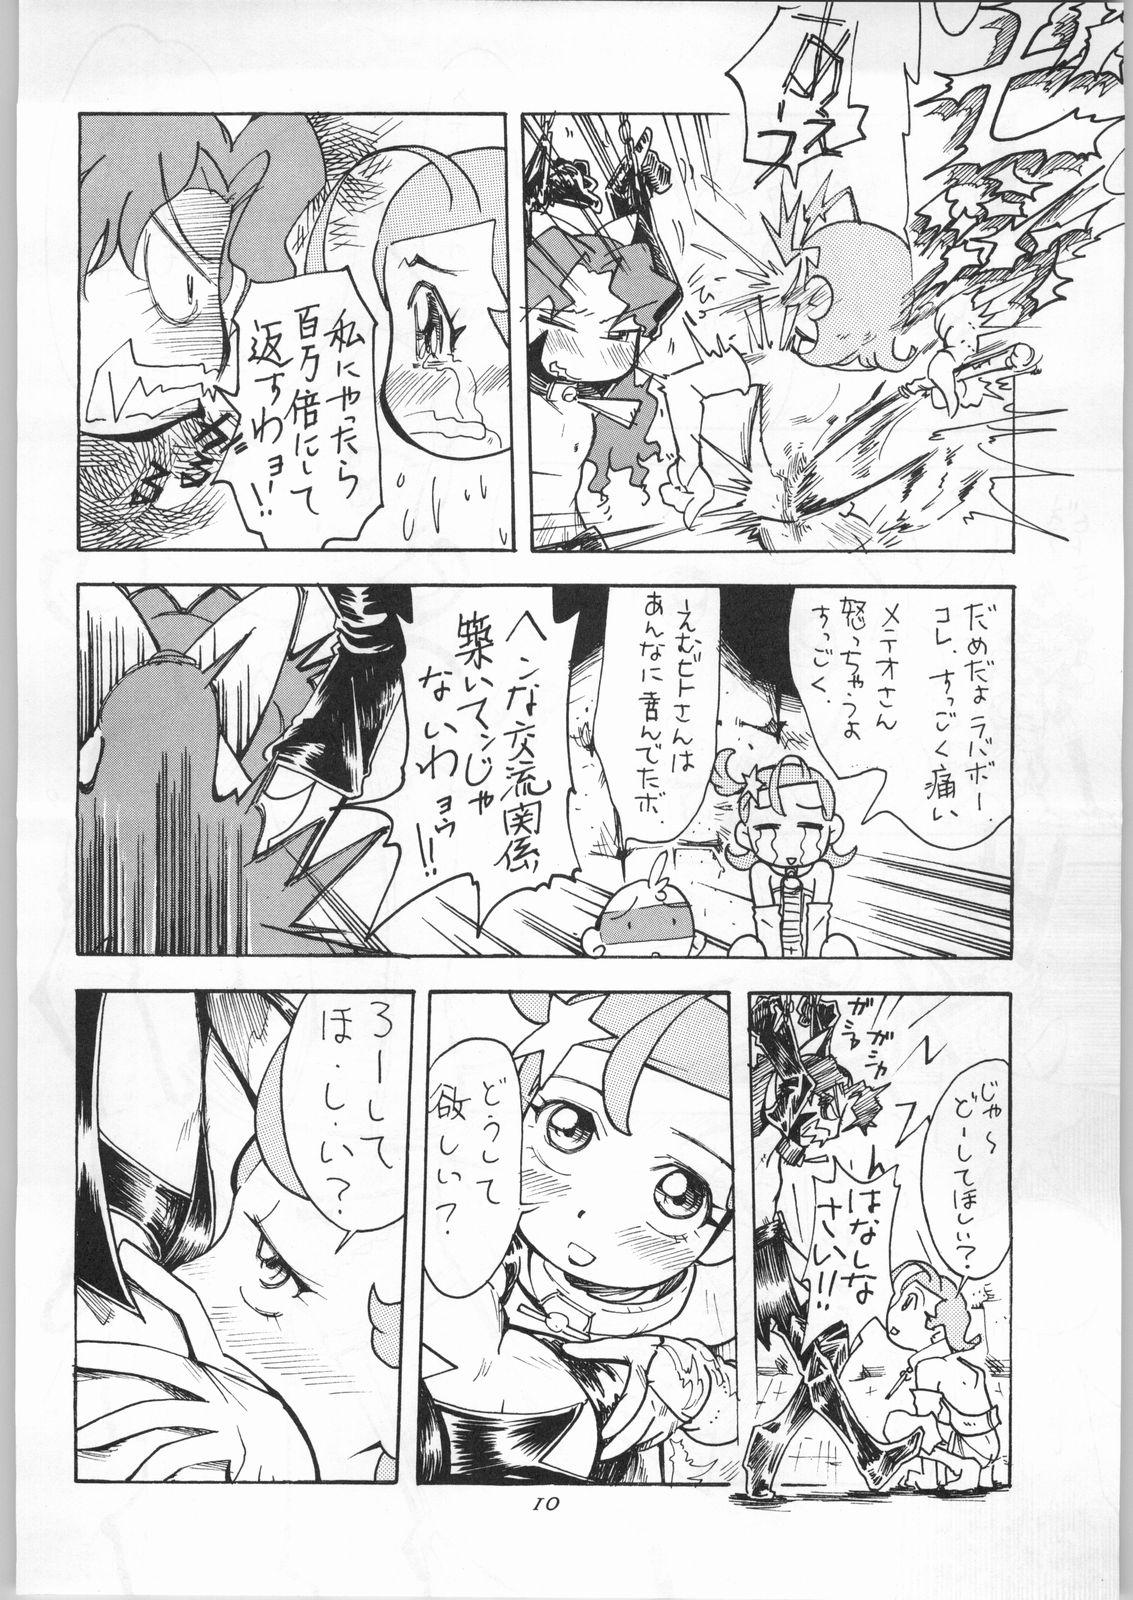 Vagina Hoshi ni Etoile - Cosmic baton girl comet-san Slapping - Page 11